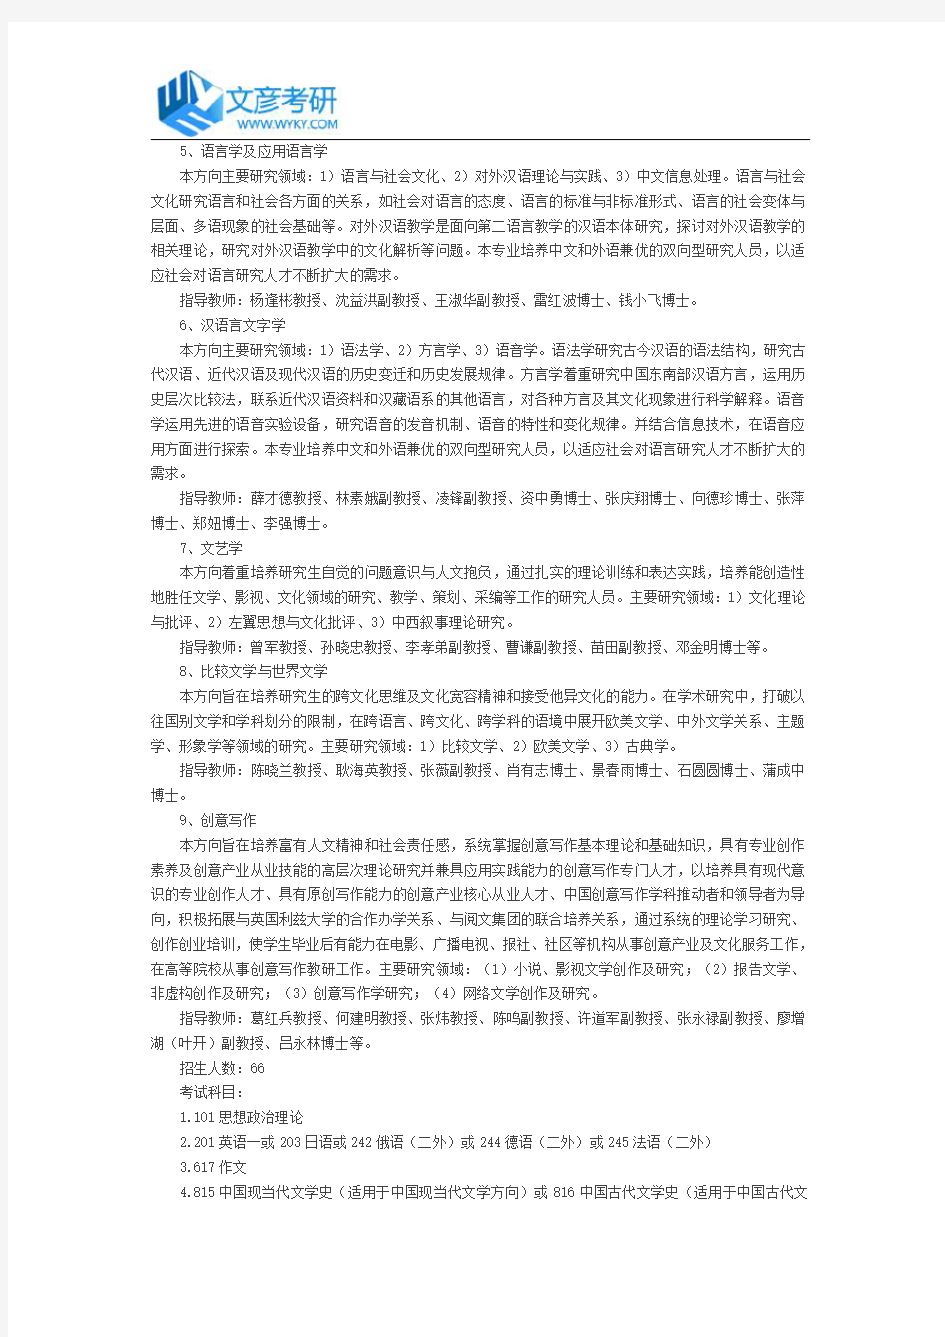 上海大学2018年中国语言文学硕士研究生招生目录_上海大学考研网